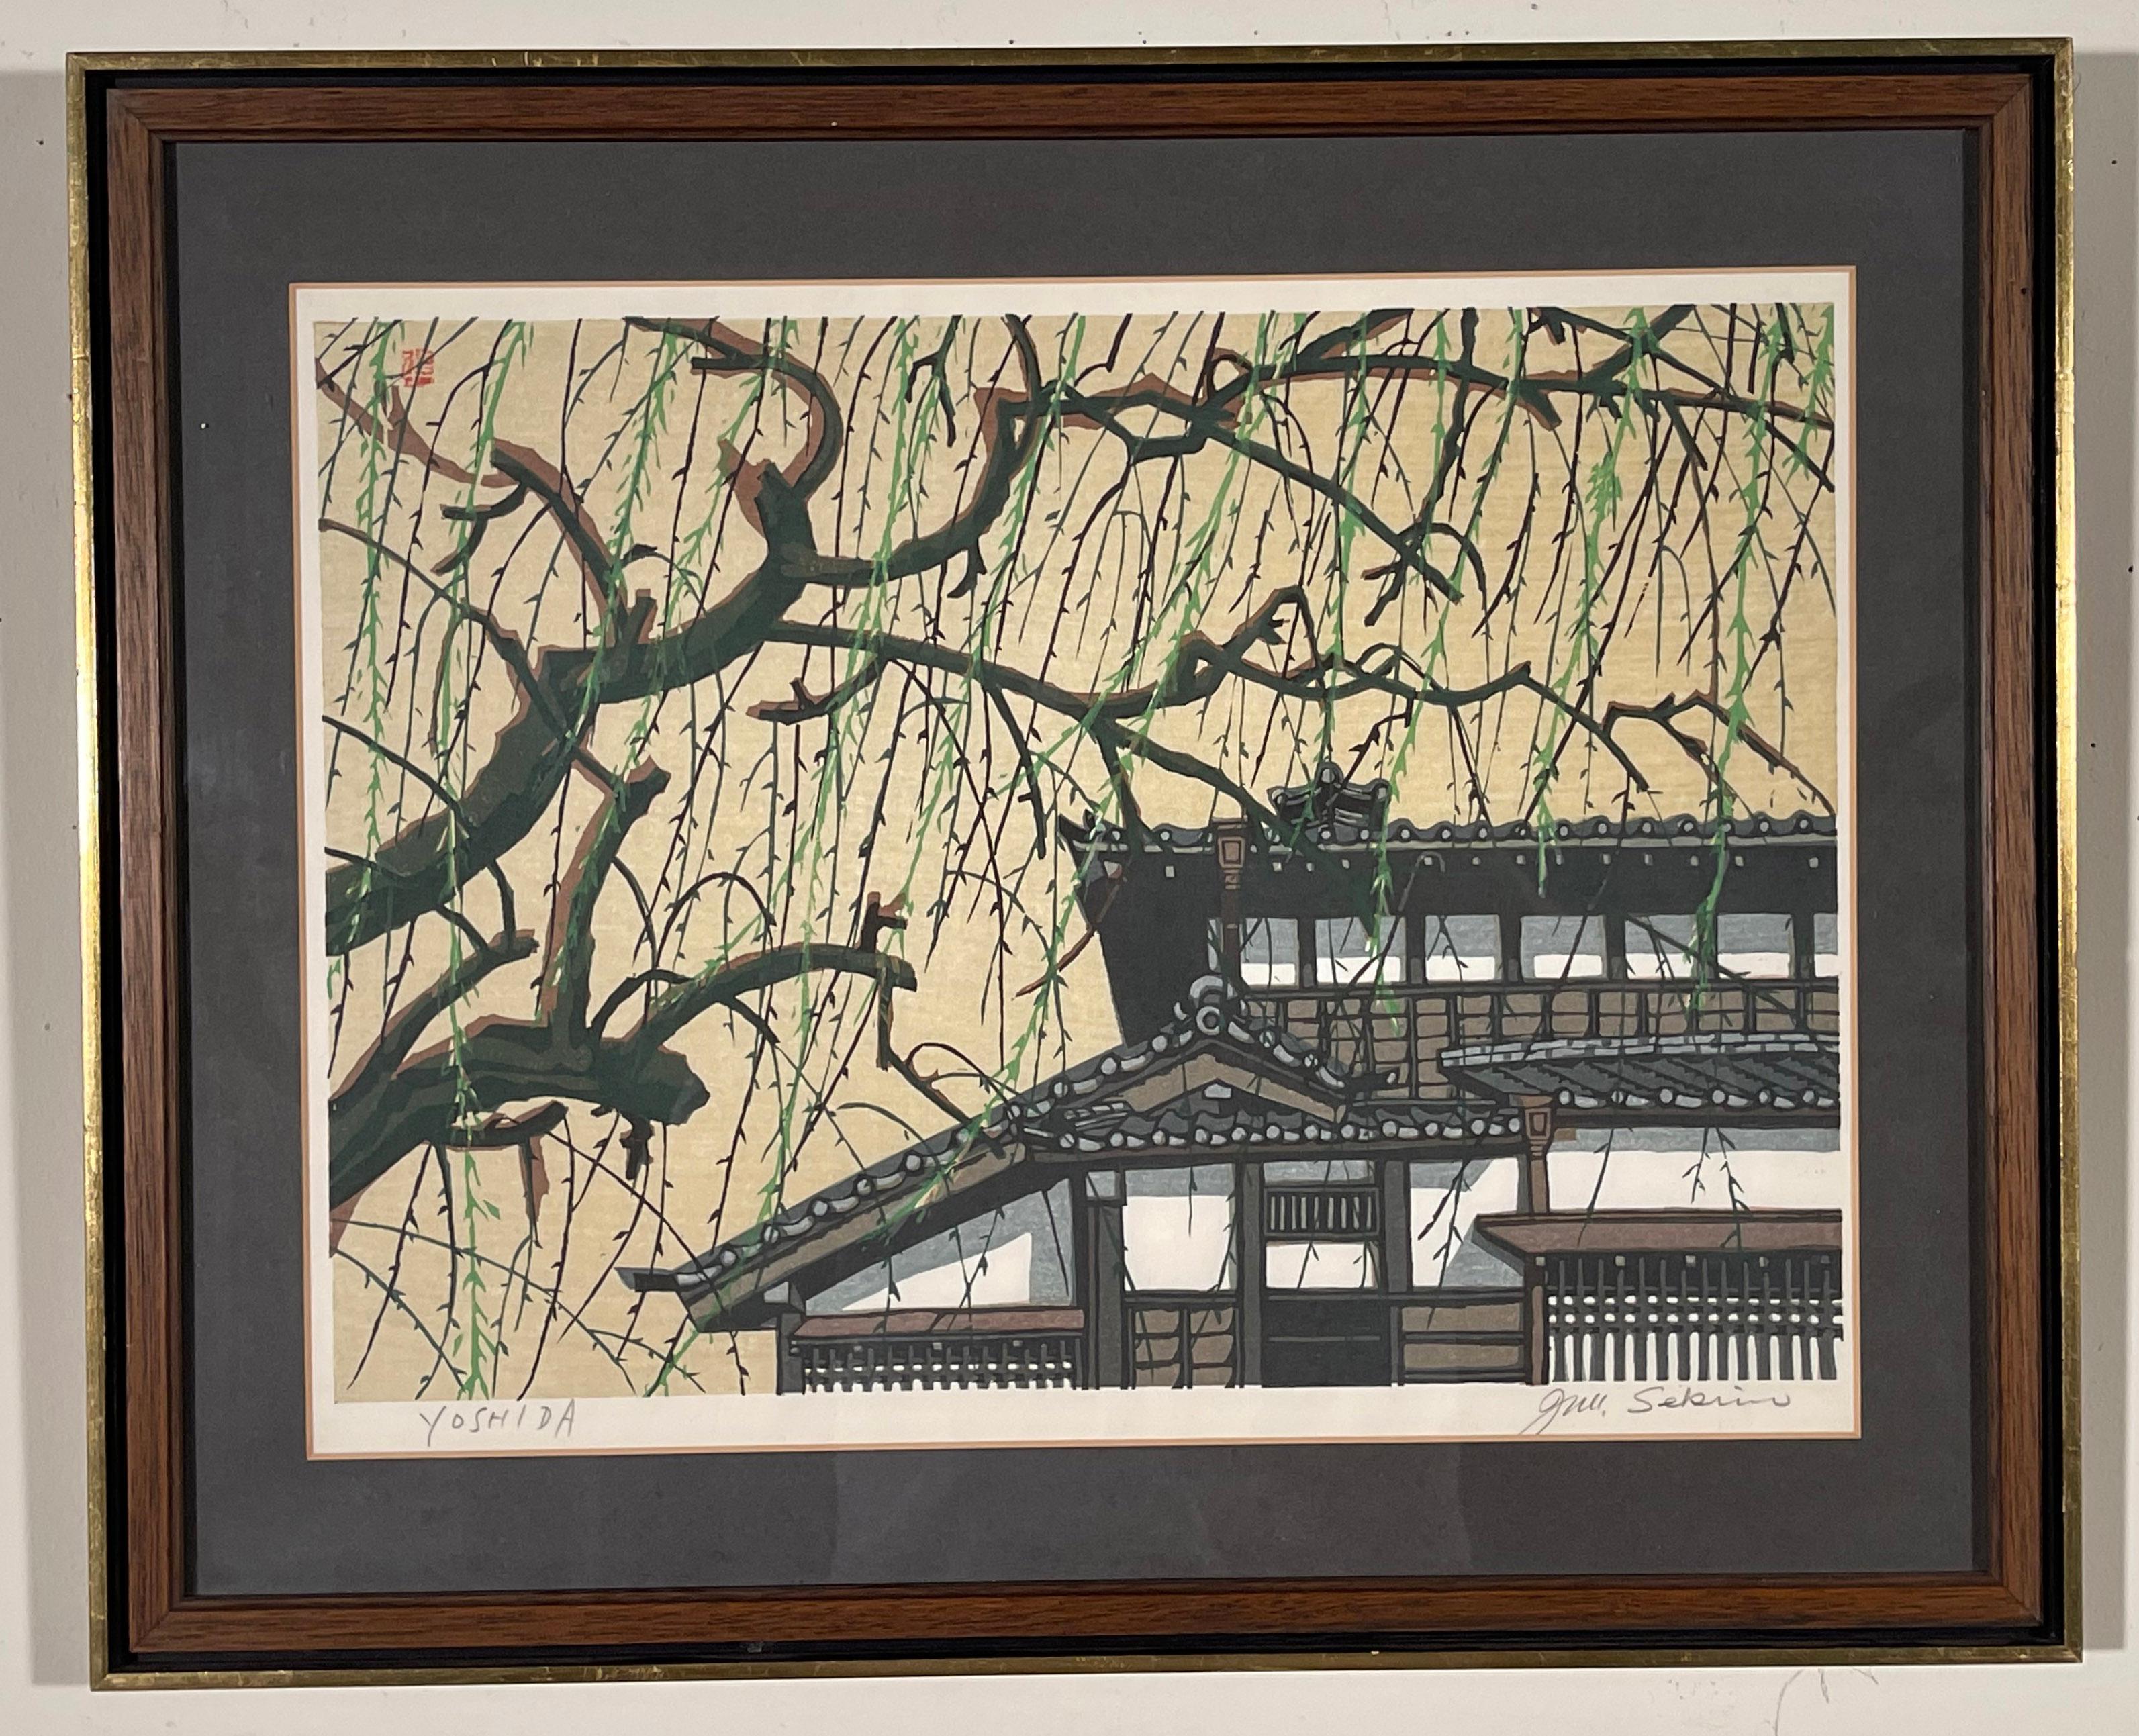 TEAHOUSE AND WILLOW TREE - Print by Junichiro Sekino